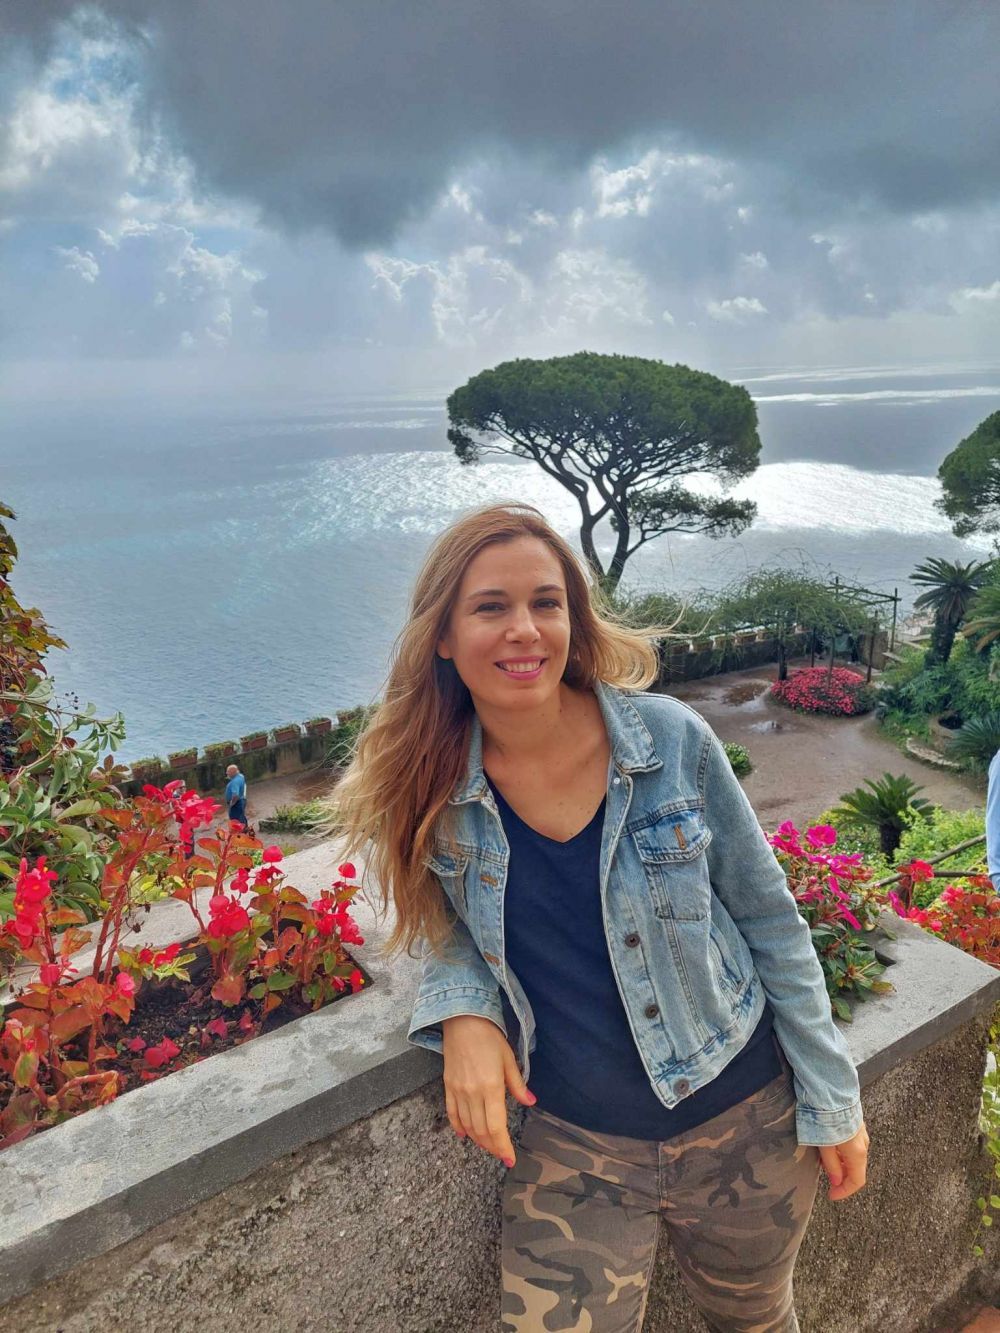 Sfaturi pentru o mini-vacanță reușită pe Coasta Amalfi. Cum să te bucuri de peisaje și atmosferă, fără stres și aglomerație